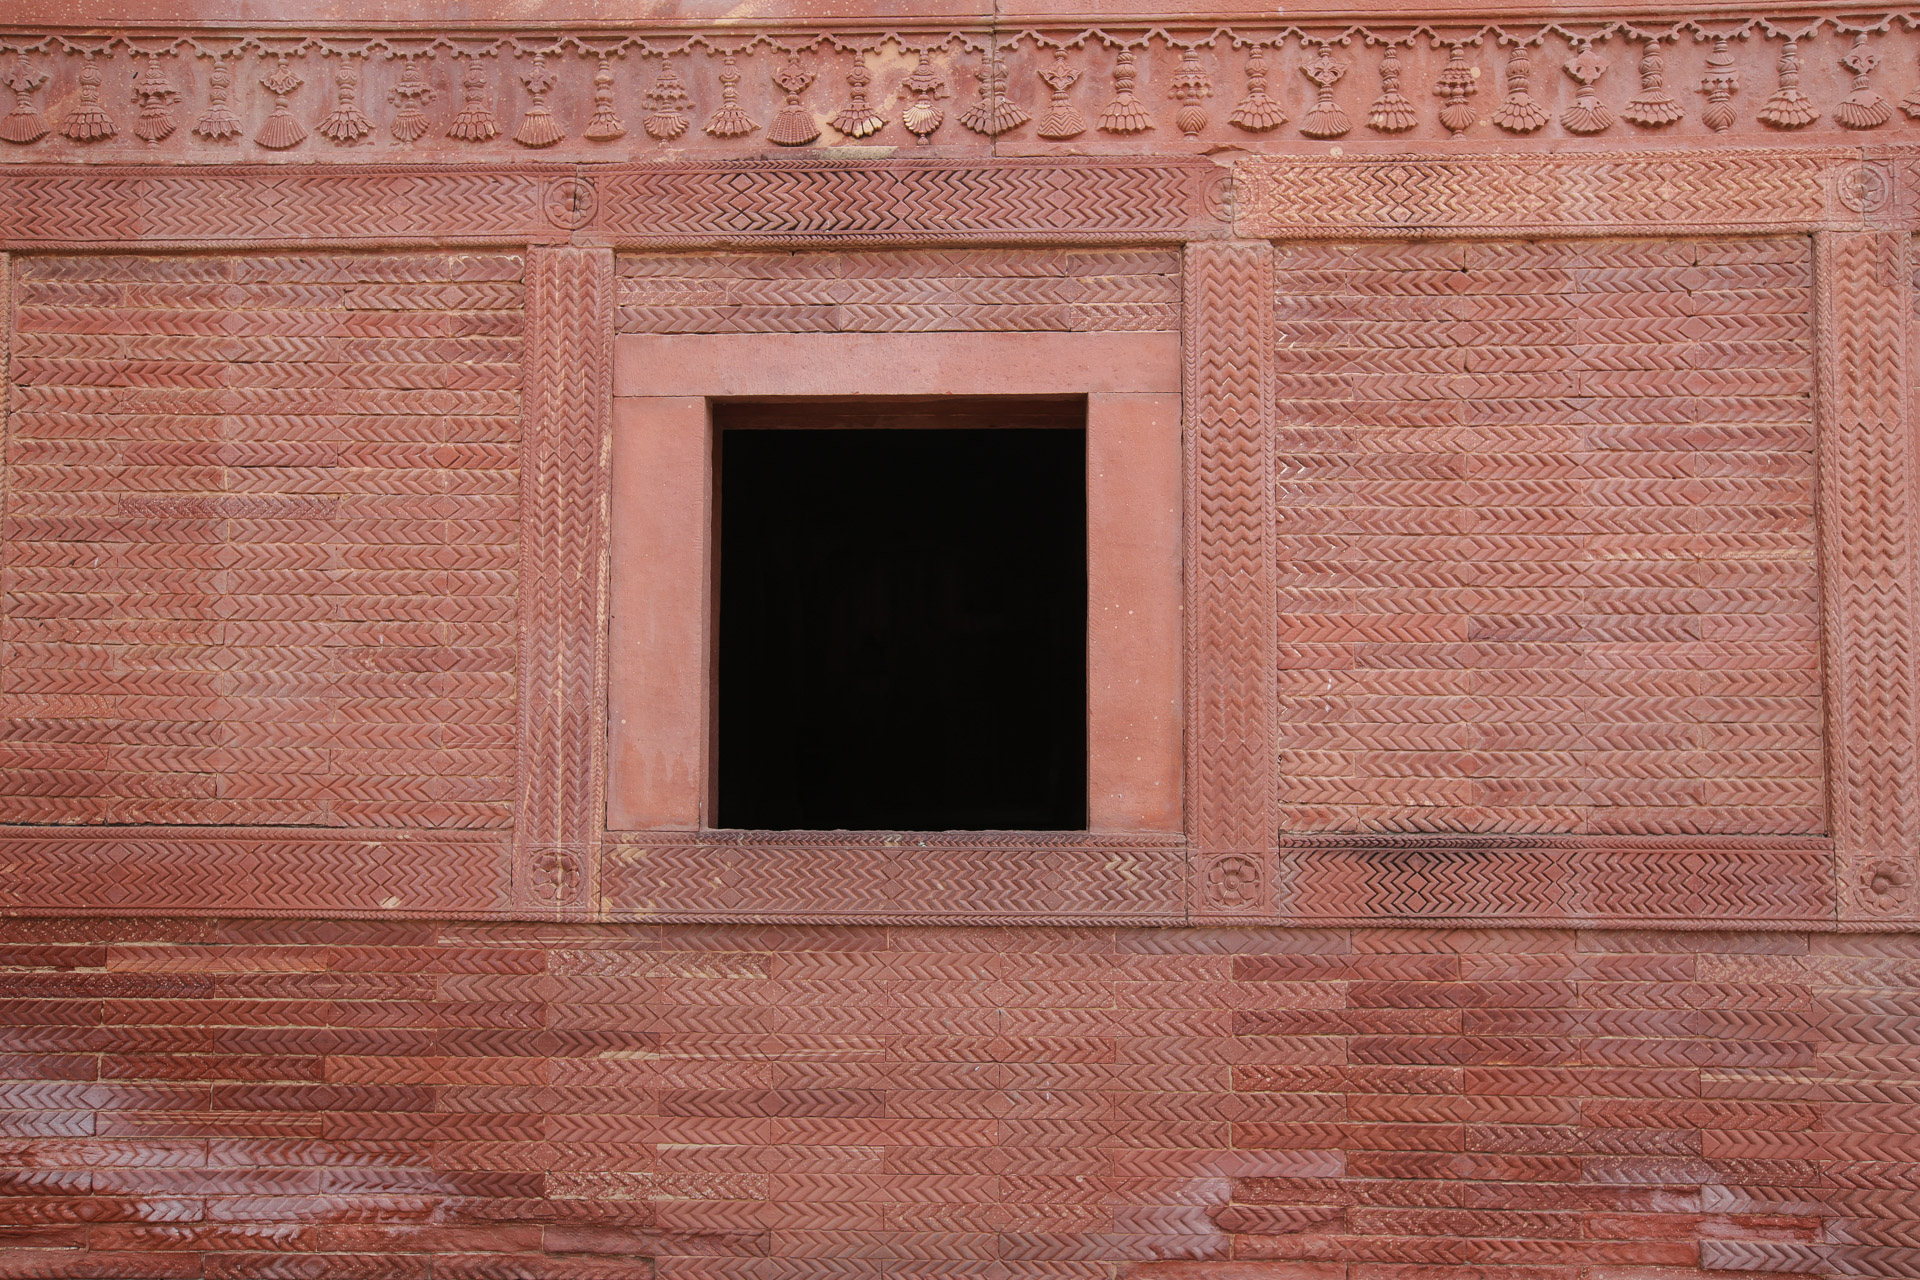 Fatehpur Sikri et le parc national de Kealadeo